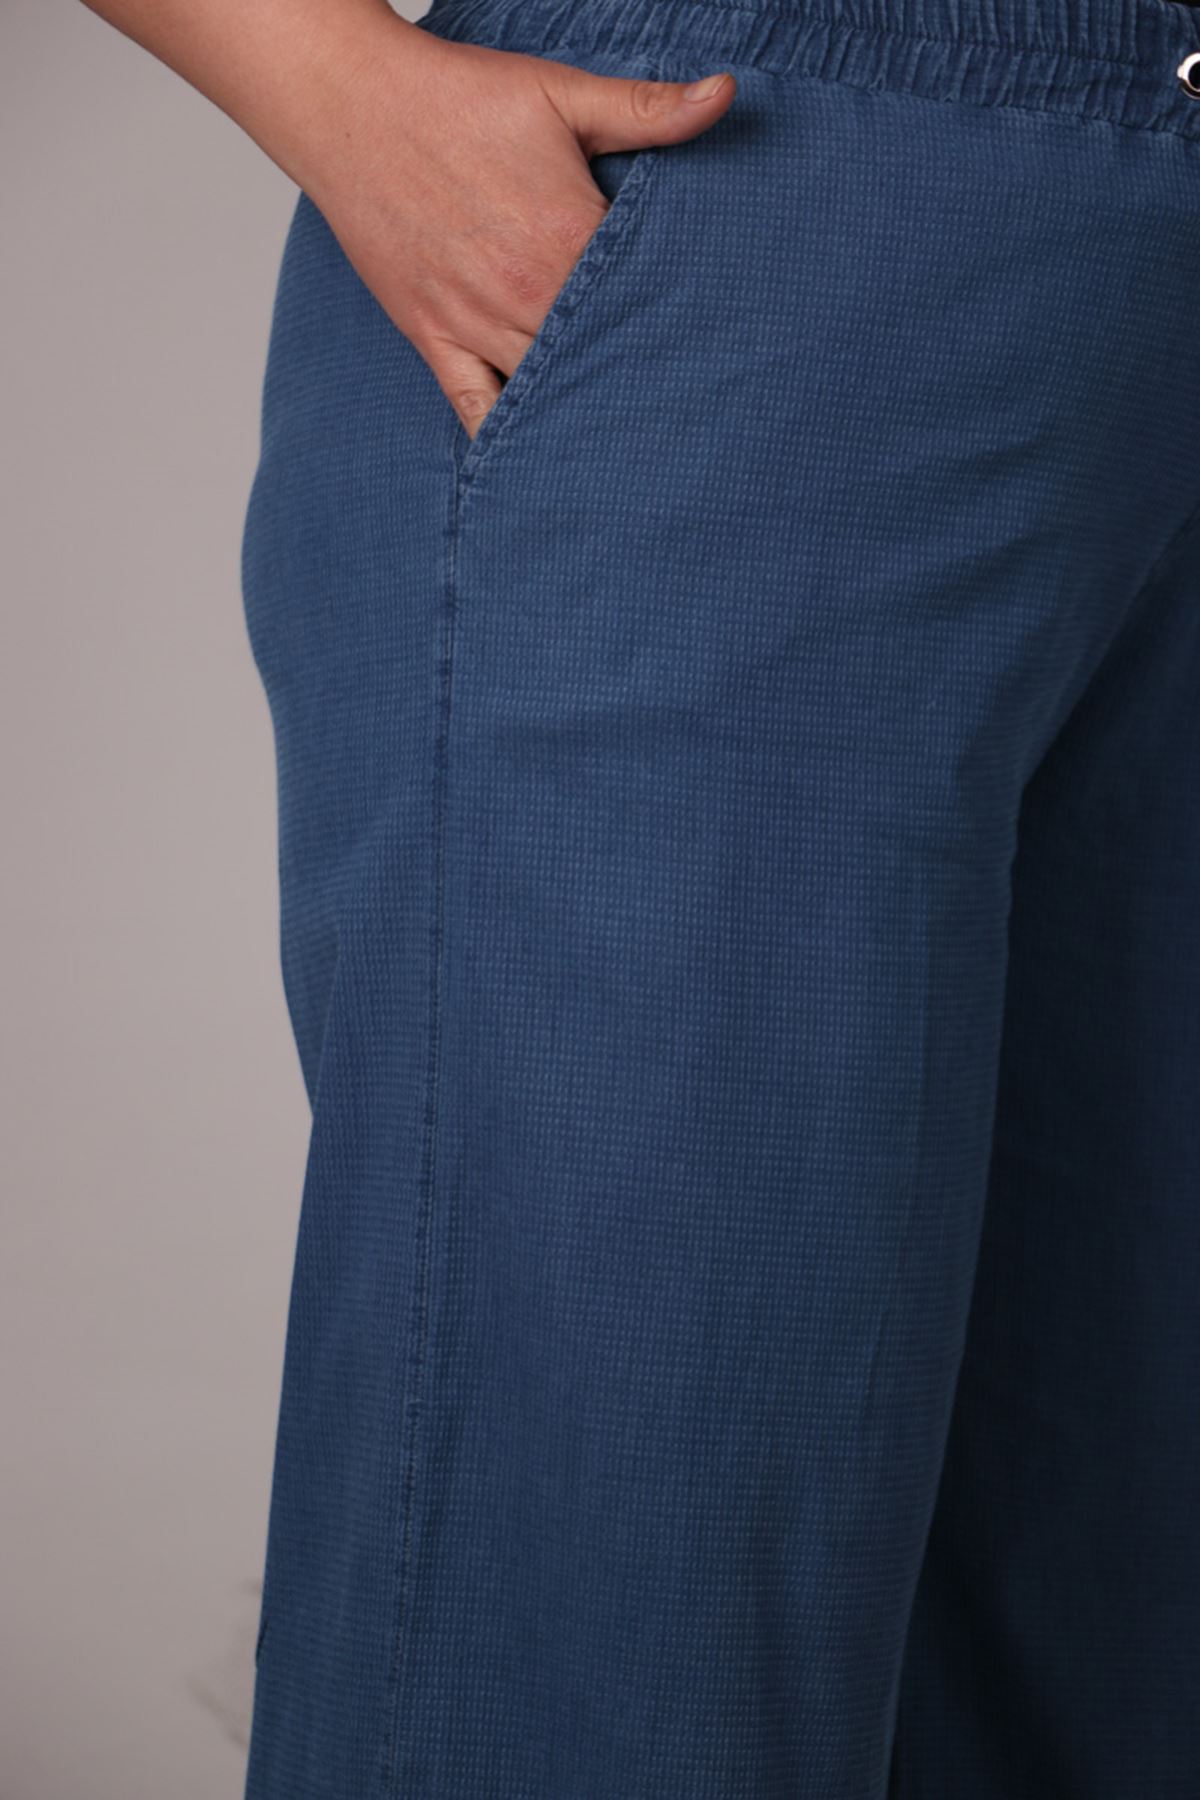 29000-1 Plus Size Piti Kareli Plentiful Trotter Jeans Pants - Blue